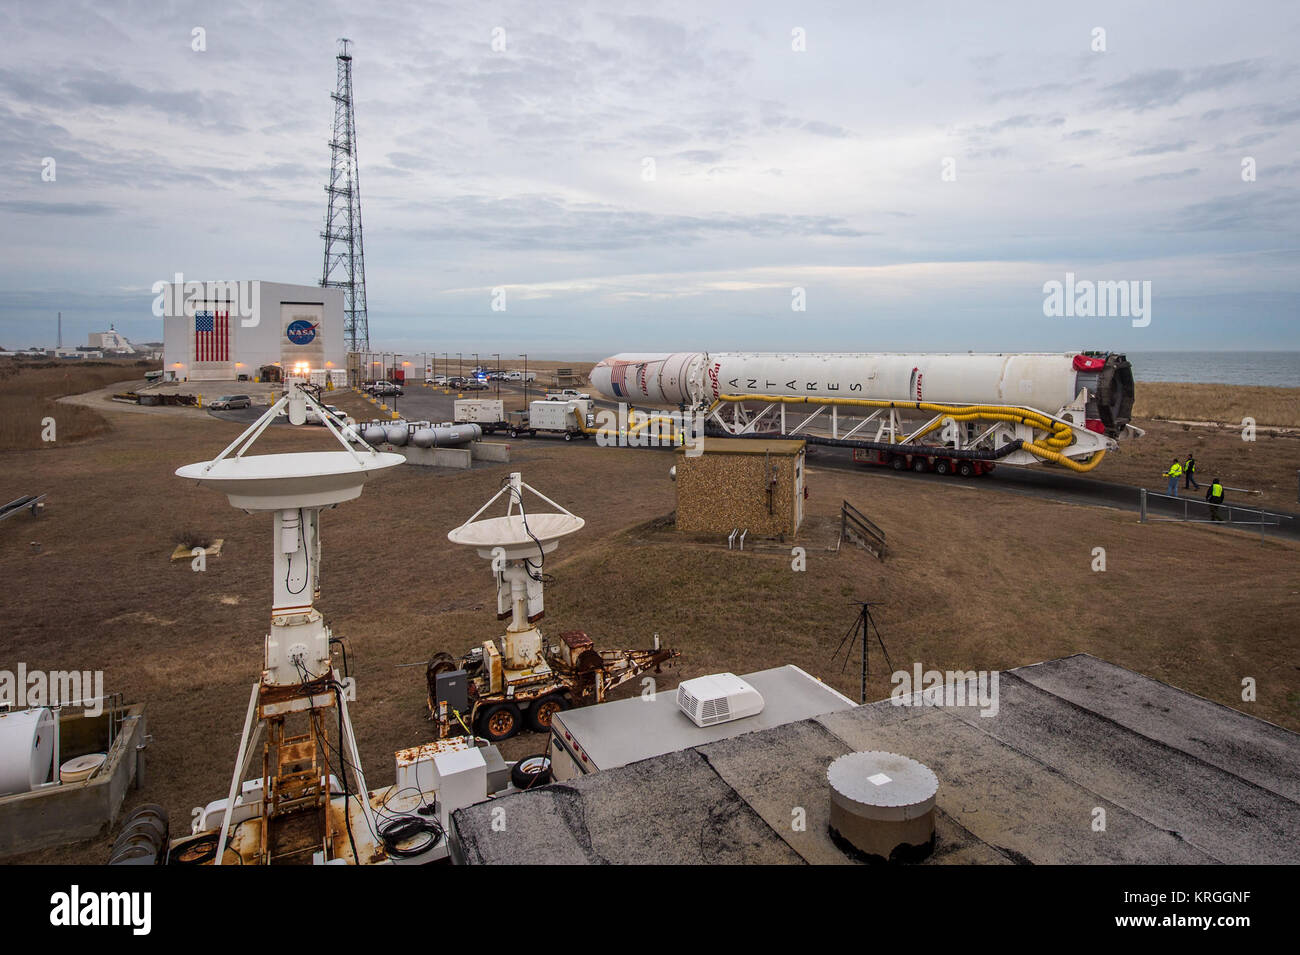 Un Orbital Sciences Corporation Antares rocket è visto come si è esteso a Launch Pad-0A in corrispondenza di NASA Wallops Flight Facility, Domenica, 5 gennaio 2014 in anticipo di una prevista Mercoledì, Gennaio 8th, 1:32 p.m. Lancio di EST, Wallops Island, VA. L'Antares lancerà un Cygnus navicella spaziale su una nave da trasporto di rialimentazione missione alla stazione spaziale internazionale. L'orbitale-1 missione è Orbital Sciences" primo contratto consegna merci volo verso la stazione spaziale della NASA. Tra il carico a bordo di Cygnus impostato per avviare per la stazione spaziale sono esperimenti scientifici, equipaggio disposizioni, parti di ricambio e altro hardware. Ph Foto Stock